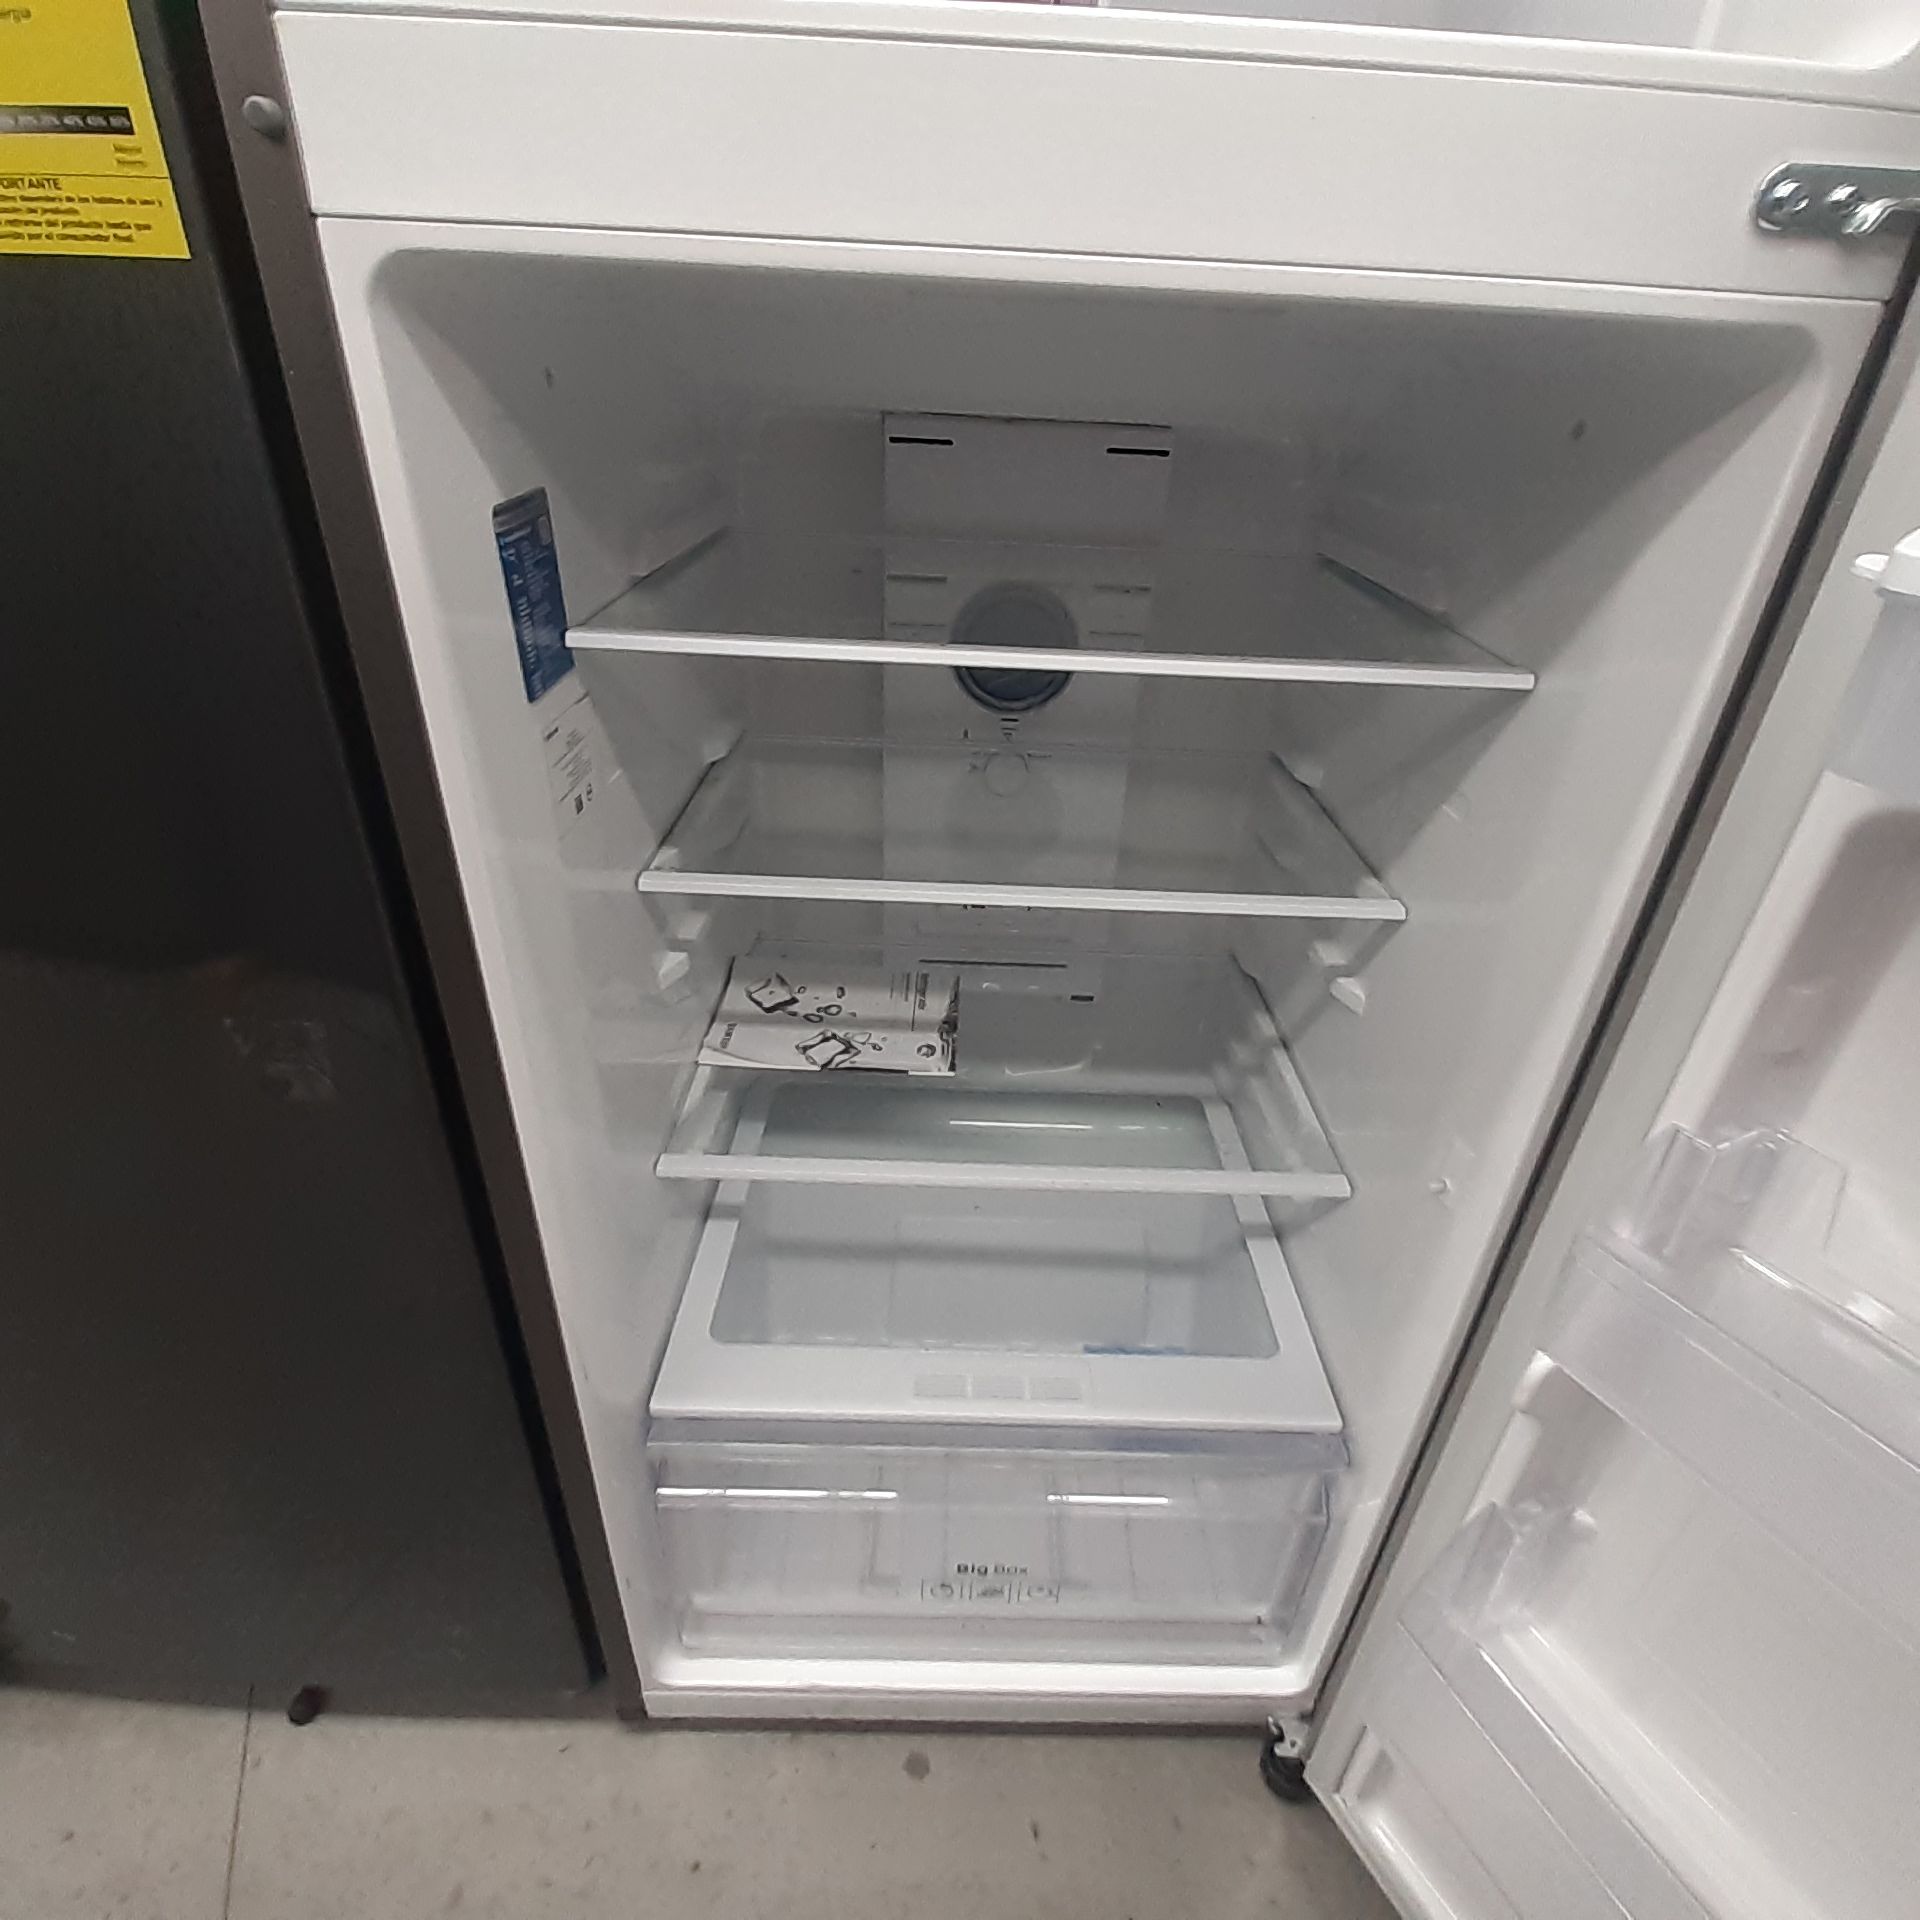 Lote De 2 Refrigeradores: 1 Refrigerador Con Dispensador De Agua Marca Samsung, 1 Refrigerador Marca - Image 10 of 18